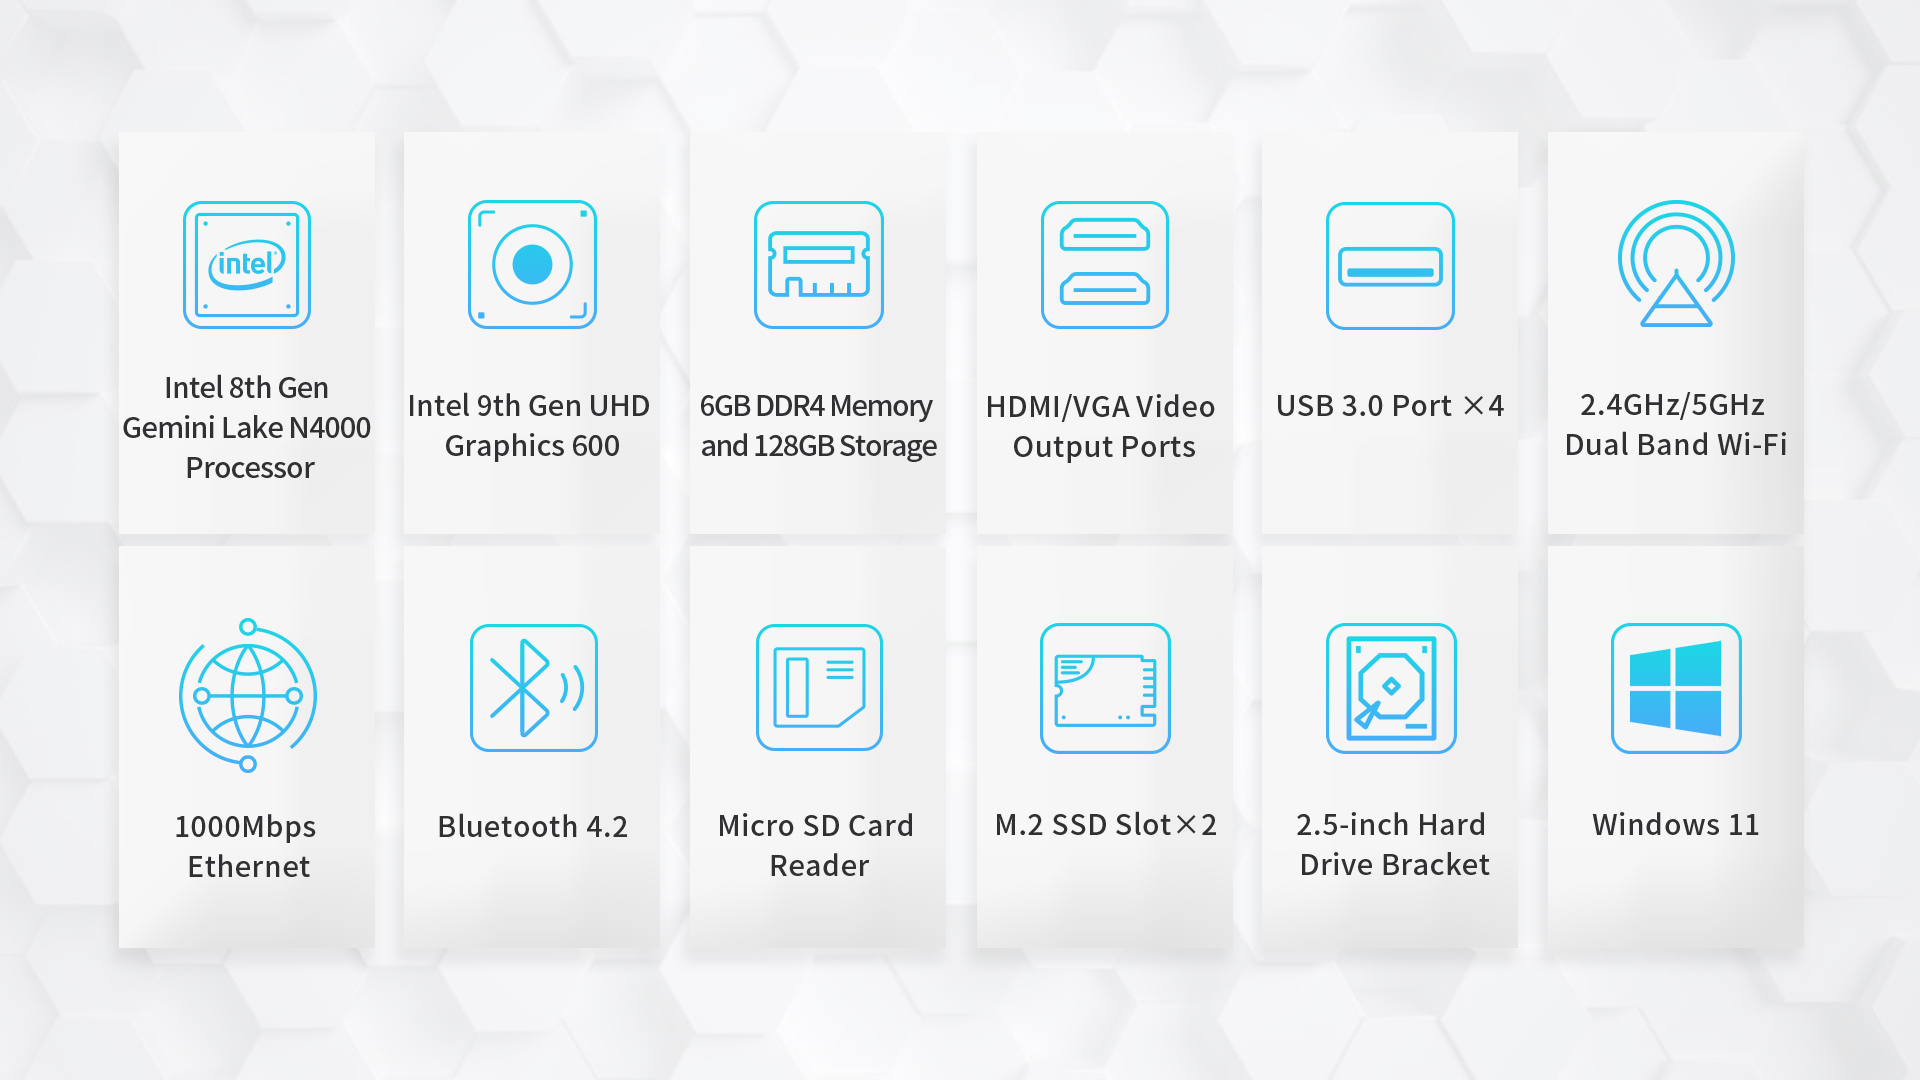 ข้อมูลประกอบของ [Windows 11 Ready!] BMAX B2S Mini PC มินิ พีซี ราคาประหยัด Intel Celeron N4020 HD Graphic Gen9 RAM 6GB DDR4 eMMC 128GB พร้อมใช้งาน ประกัน 1 ปีในไทย